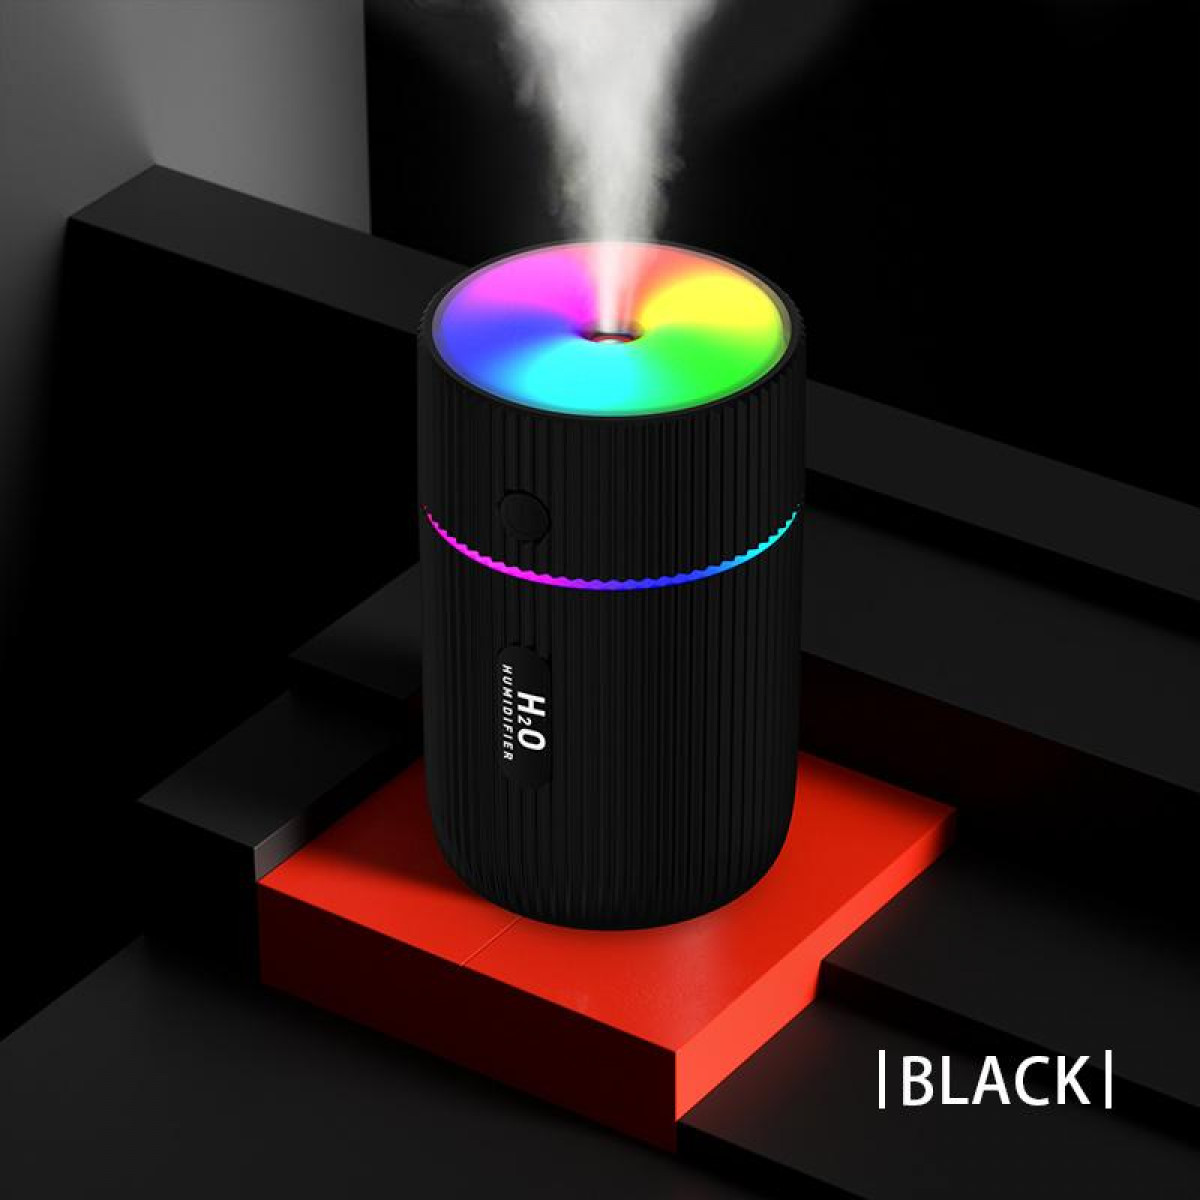 Luftbefeuchter 5 schwarz LED-Beleuchtung (Raumgröße: m²) INF bunter Luftbefeuchter mit